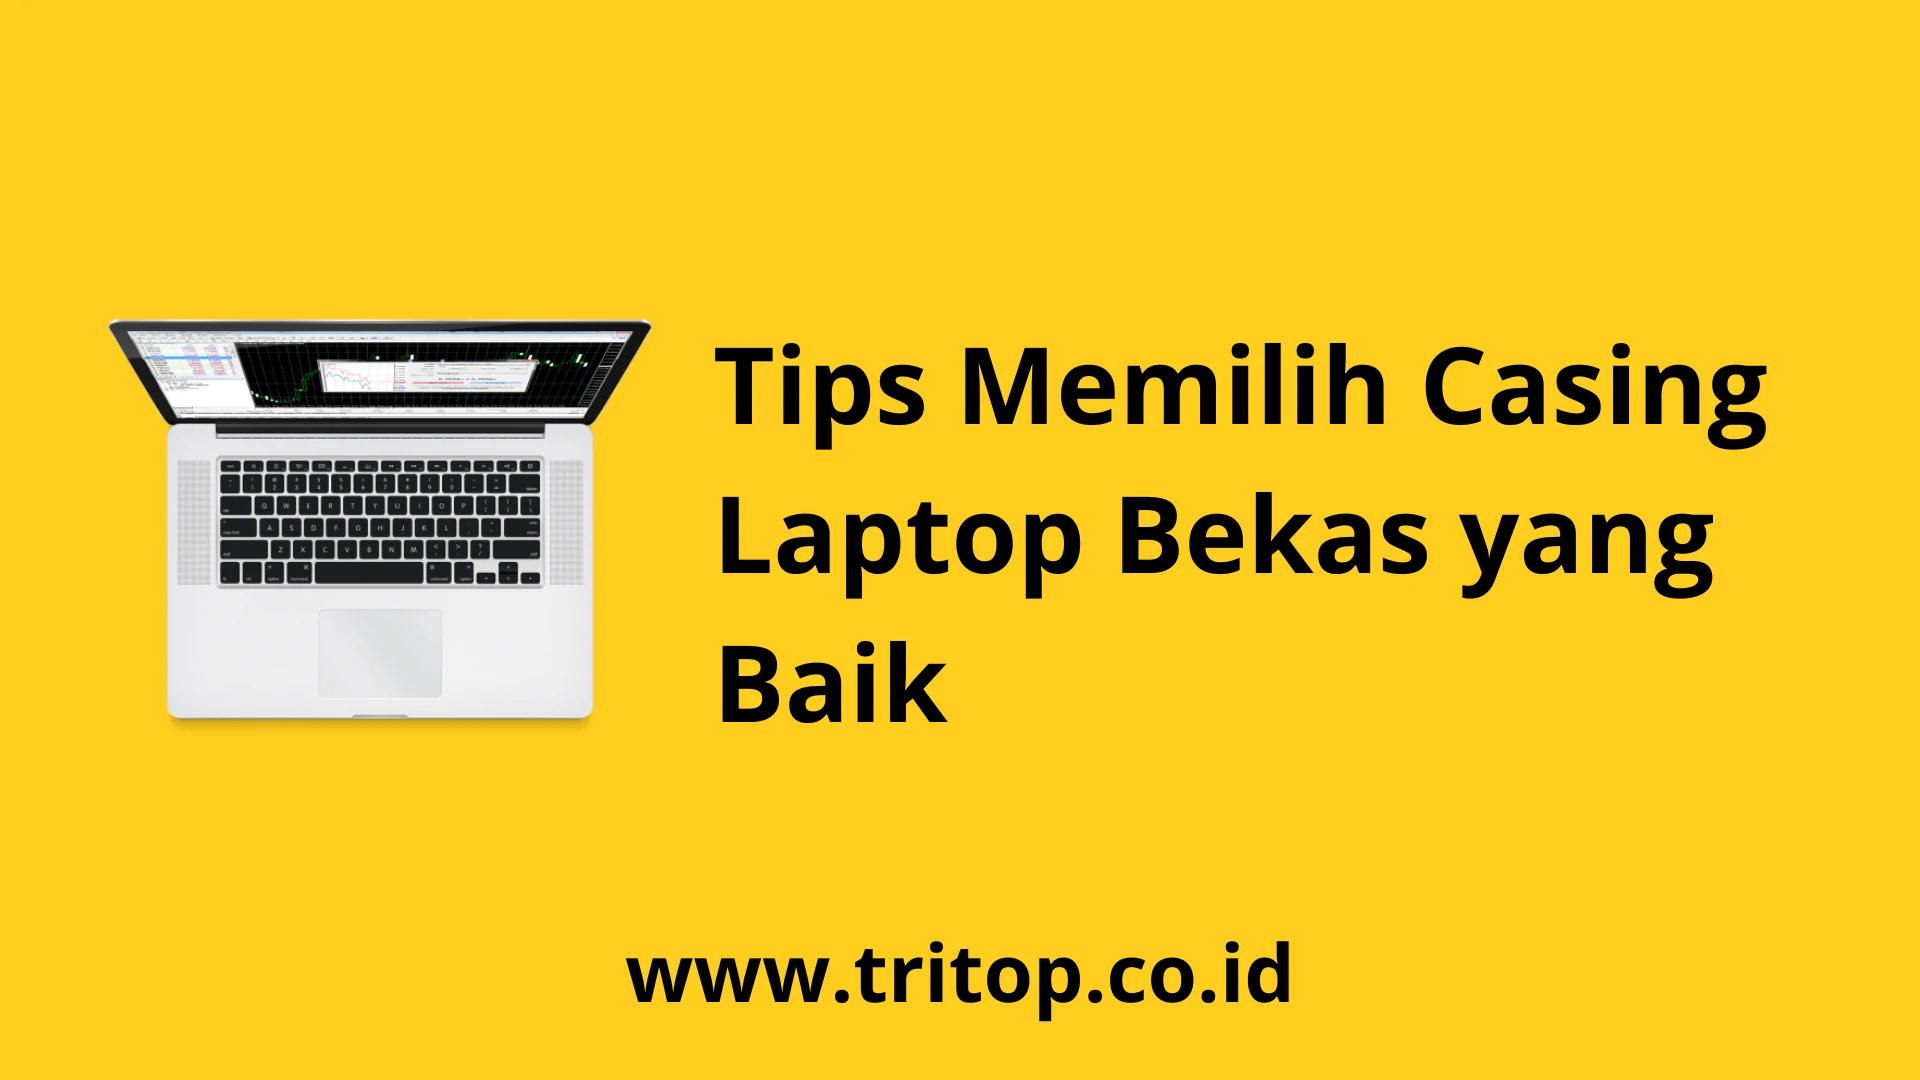 Casing Laptop Bekas www.tritop.co.id